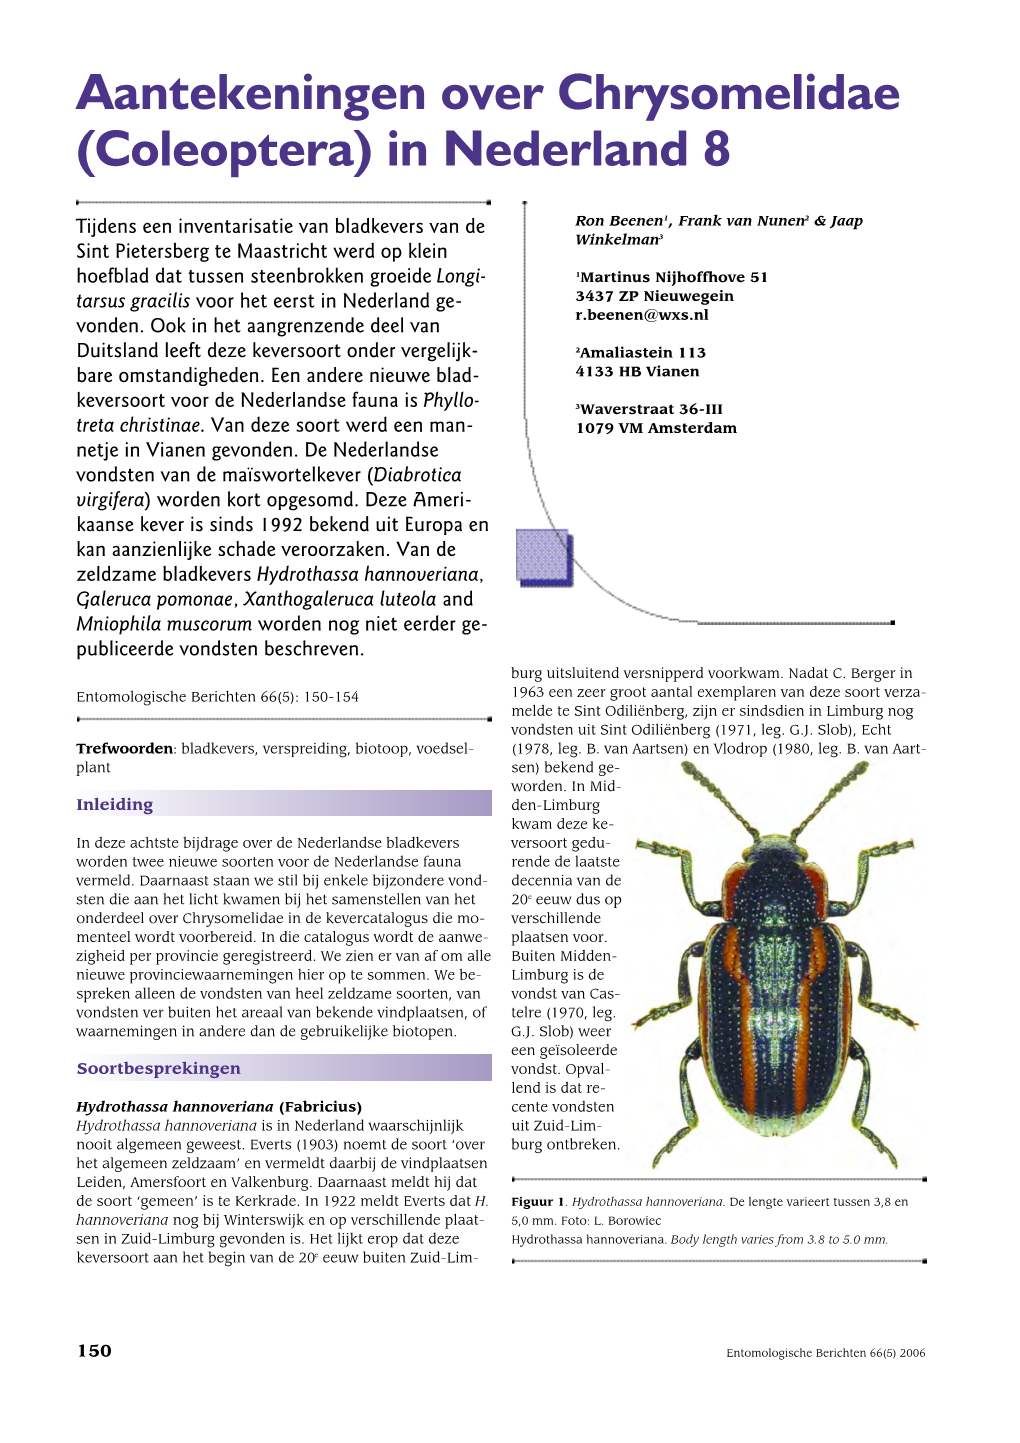 Aantekeningen Over Chrysomelidae (Coleoptera) in Nederland 8